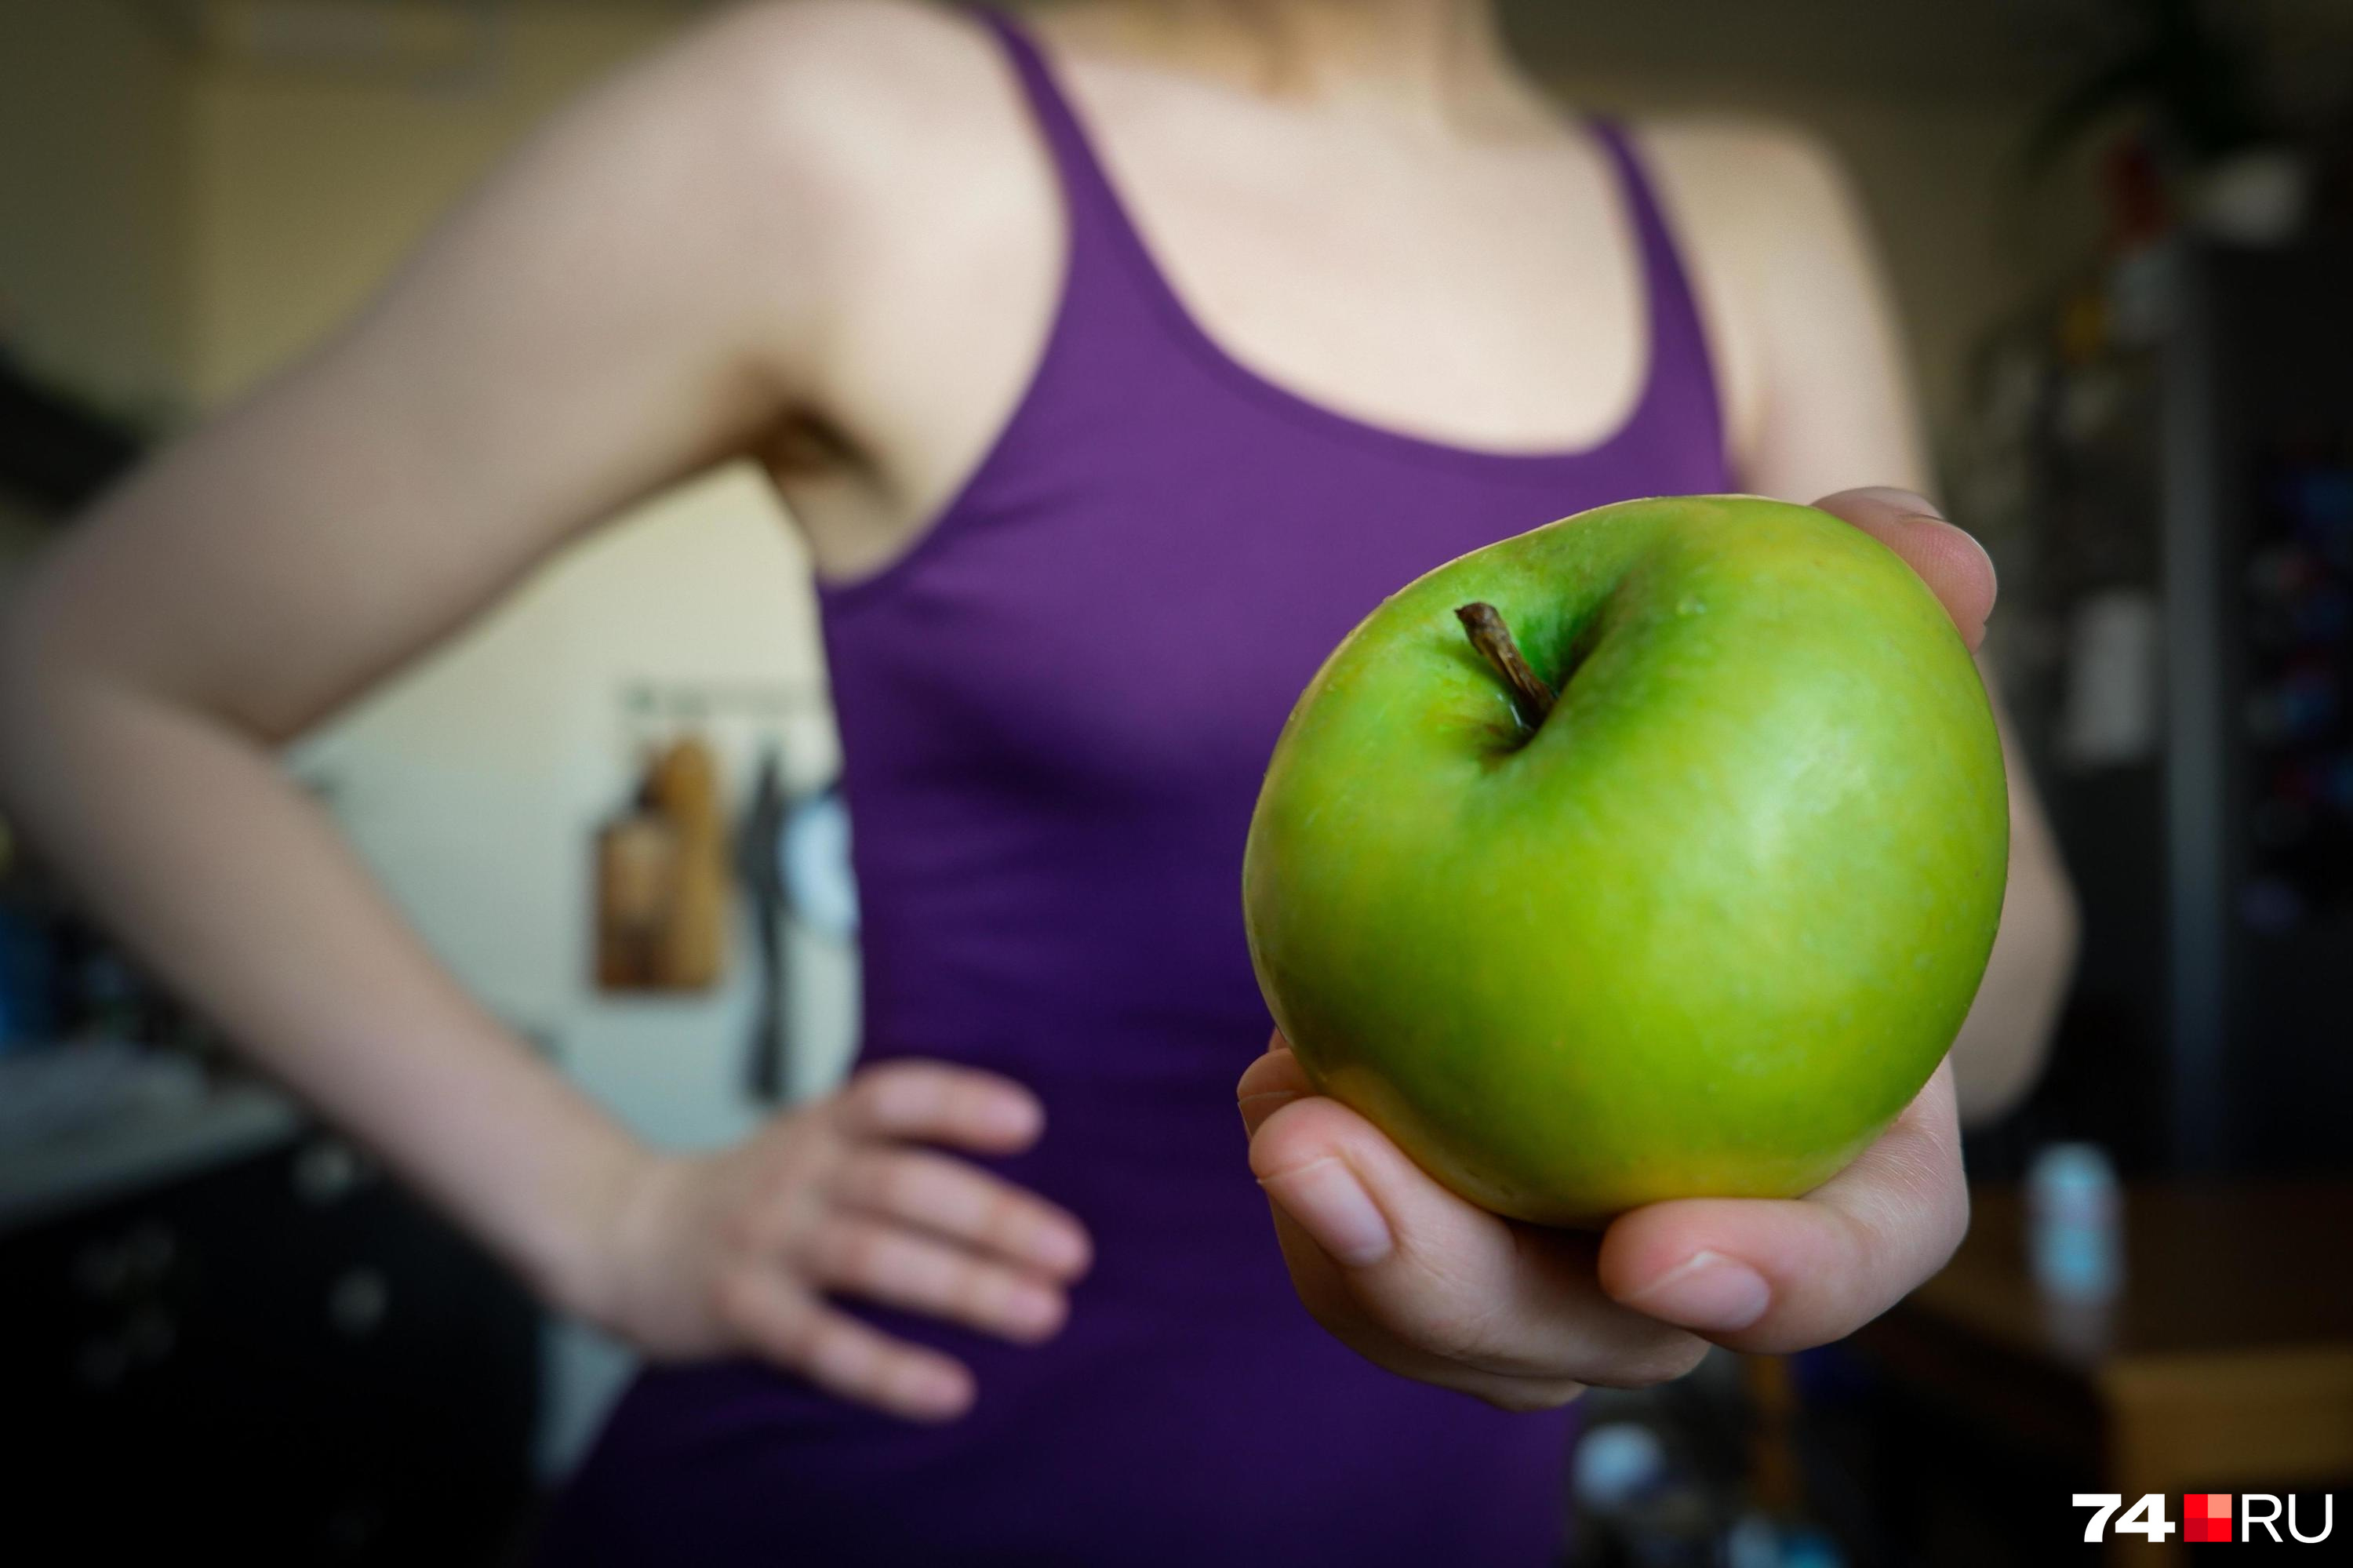 Оказывается, перекусывать яблоками не такая уж и полезная привычка